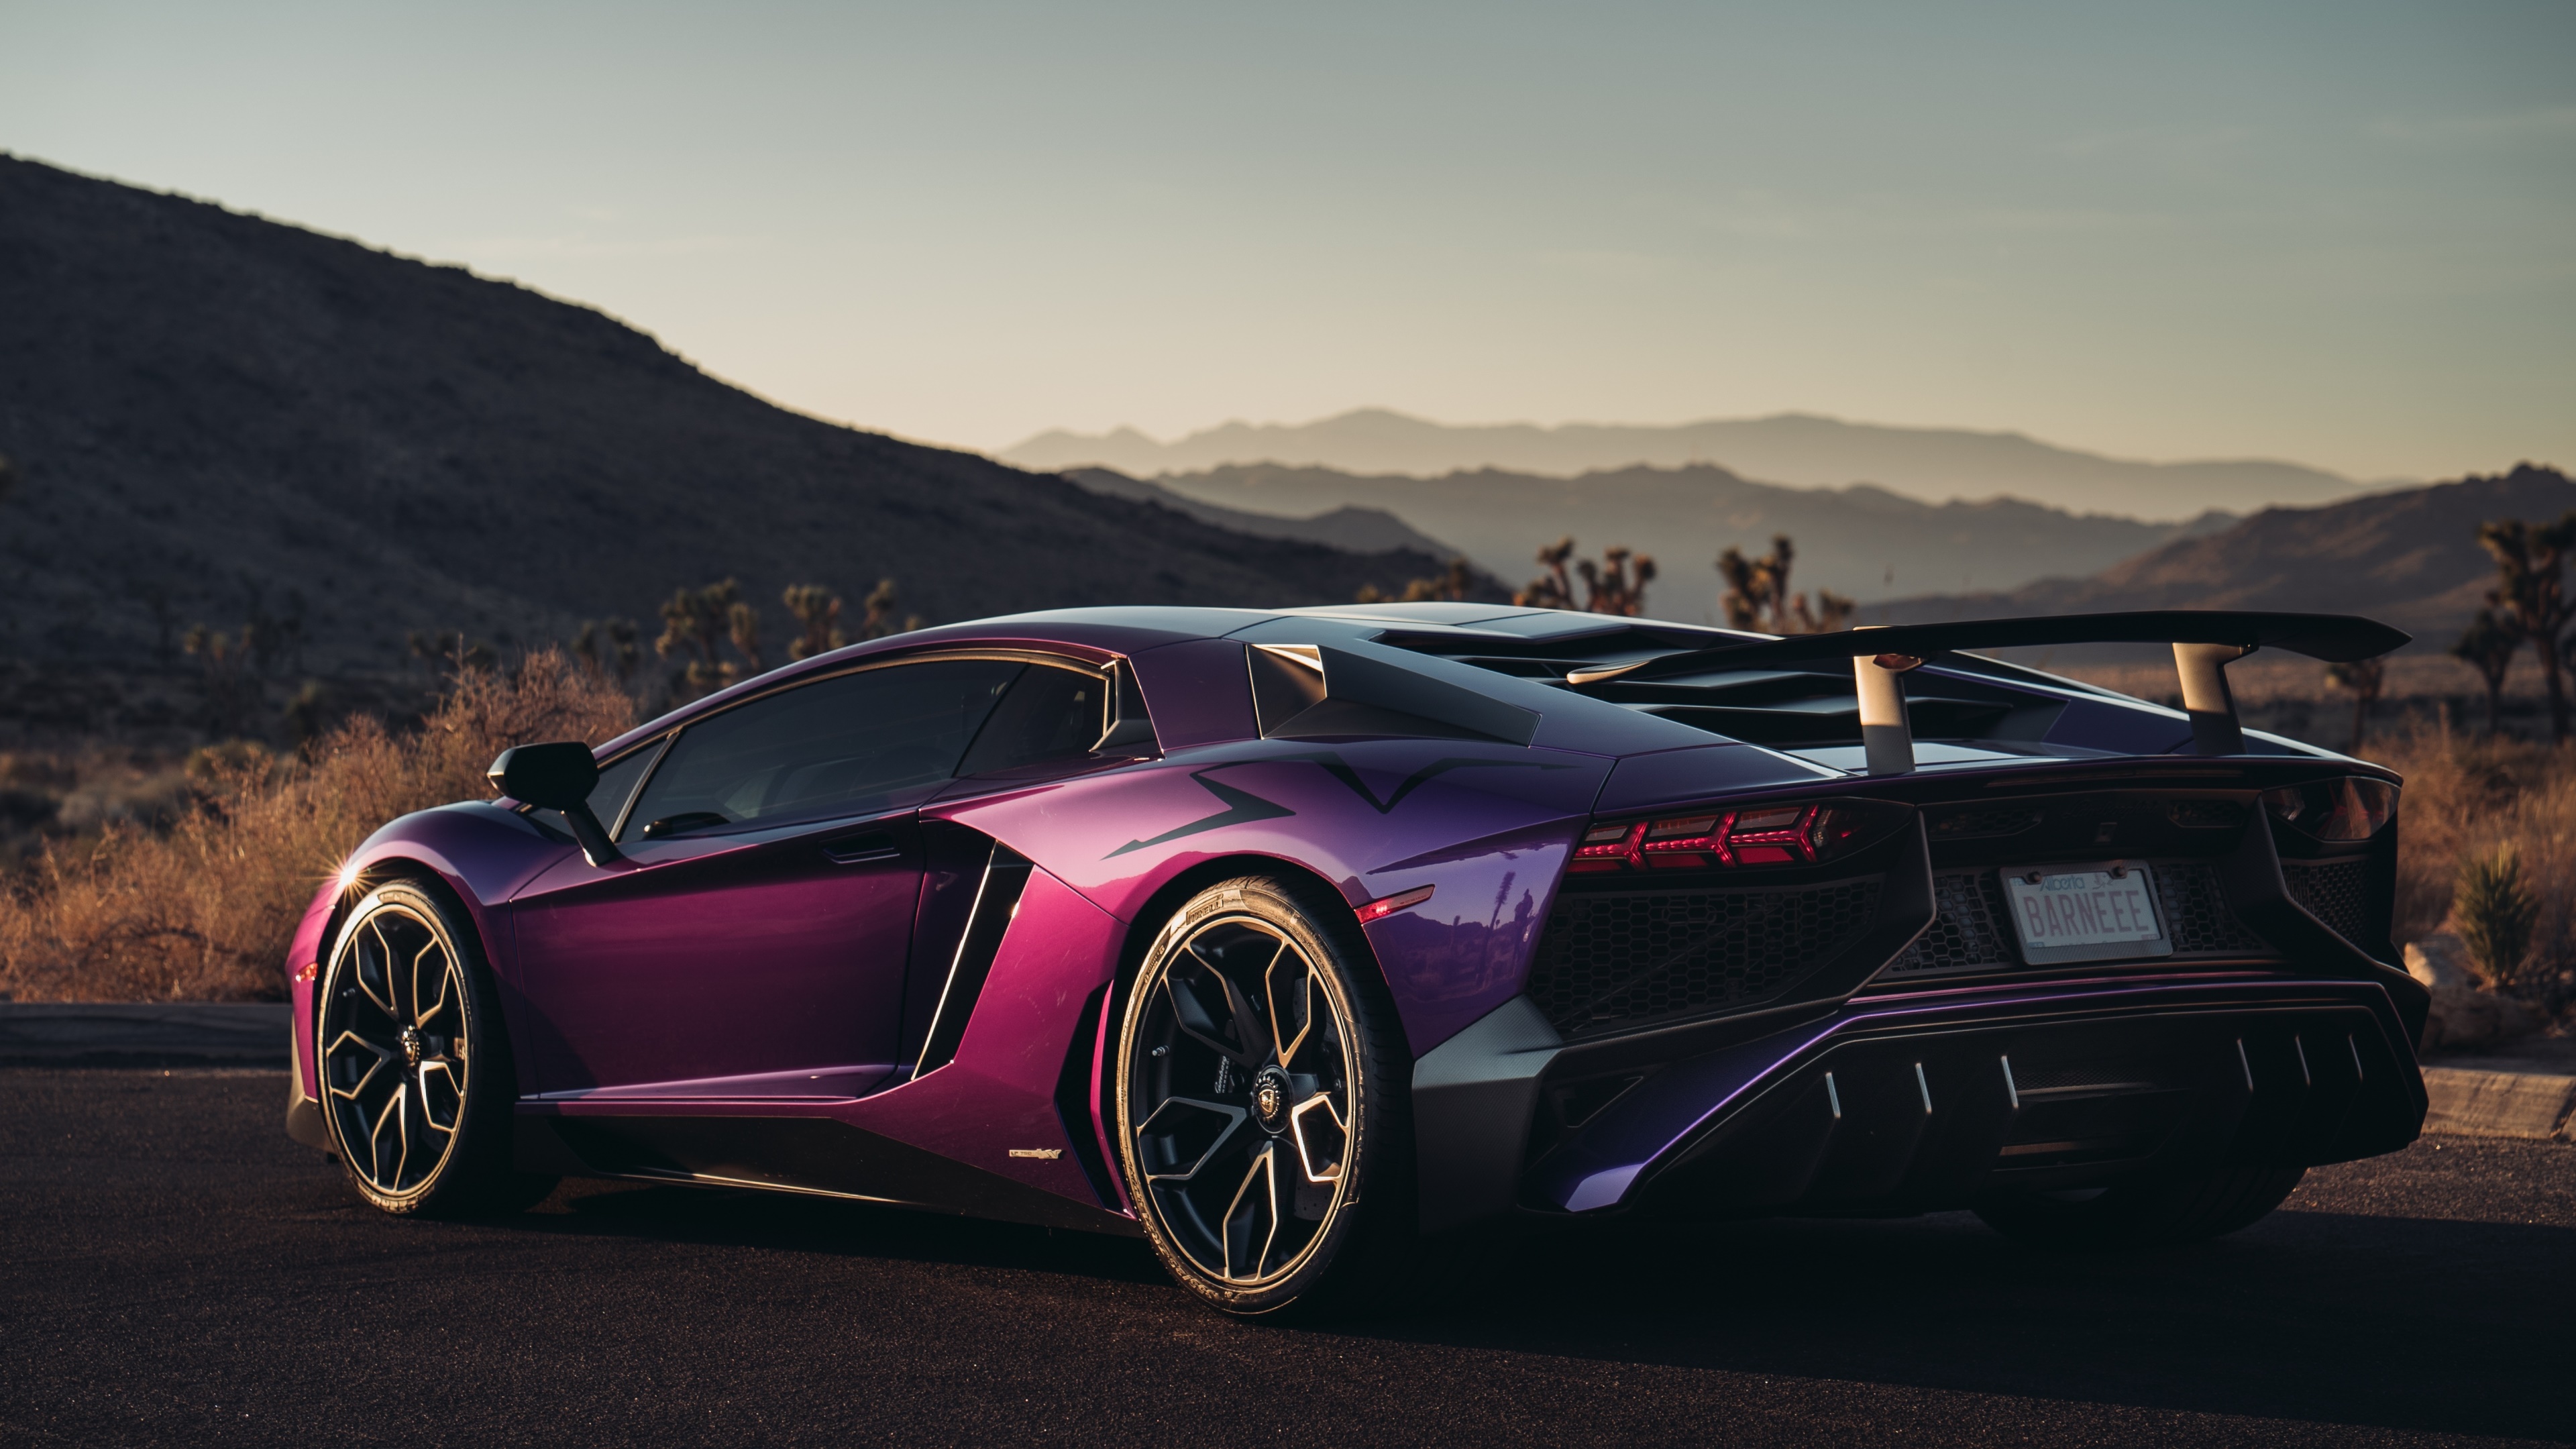 Shiny purple and pink Lamborghini Aventador LP 750-4 SuperVeloce 4k